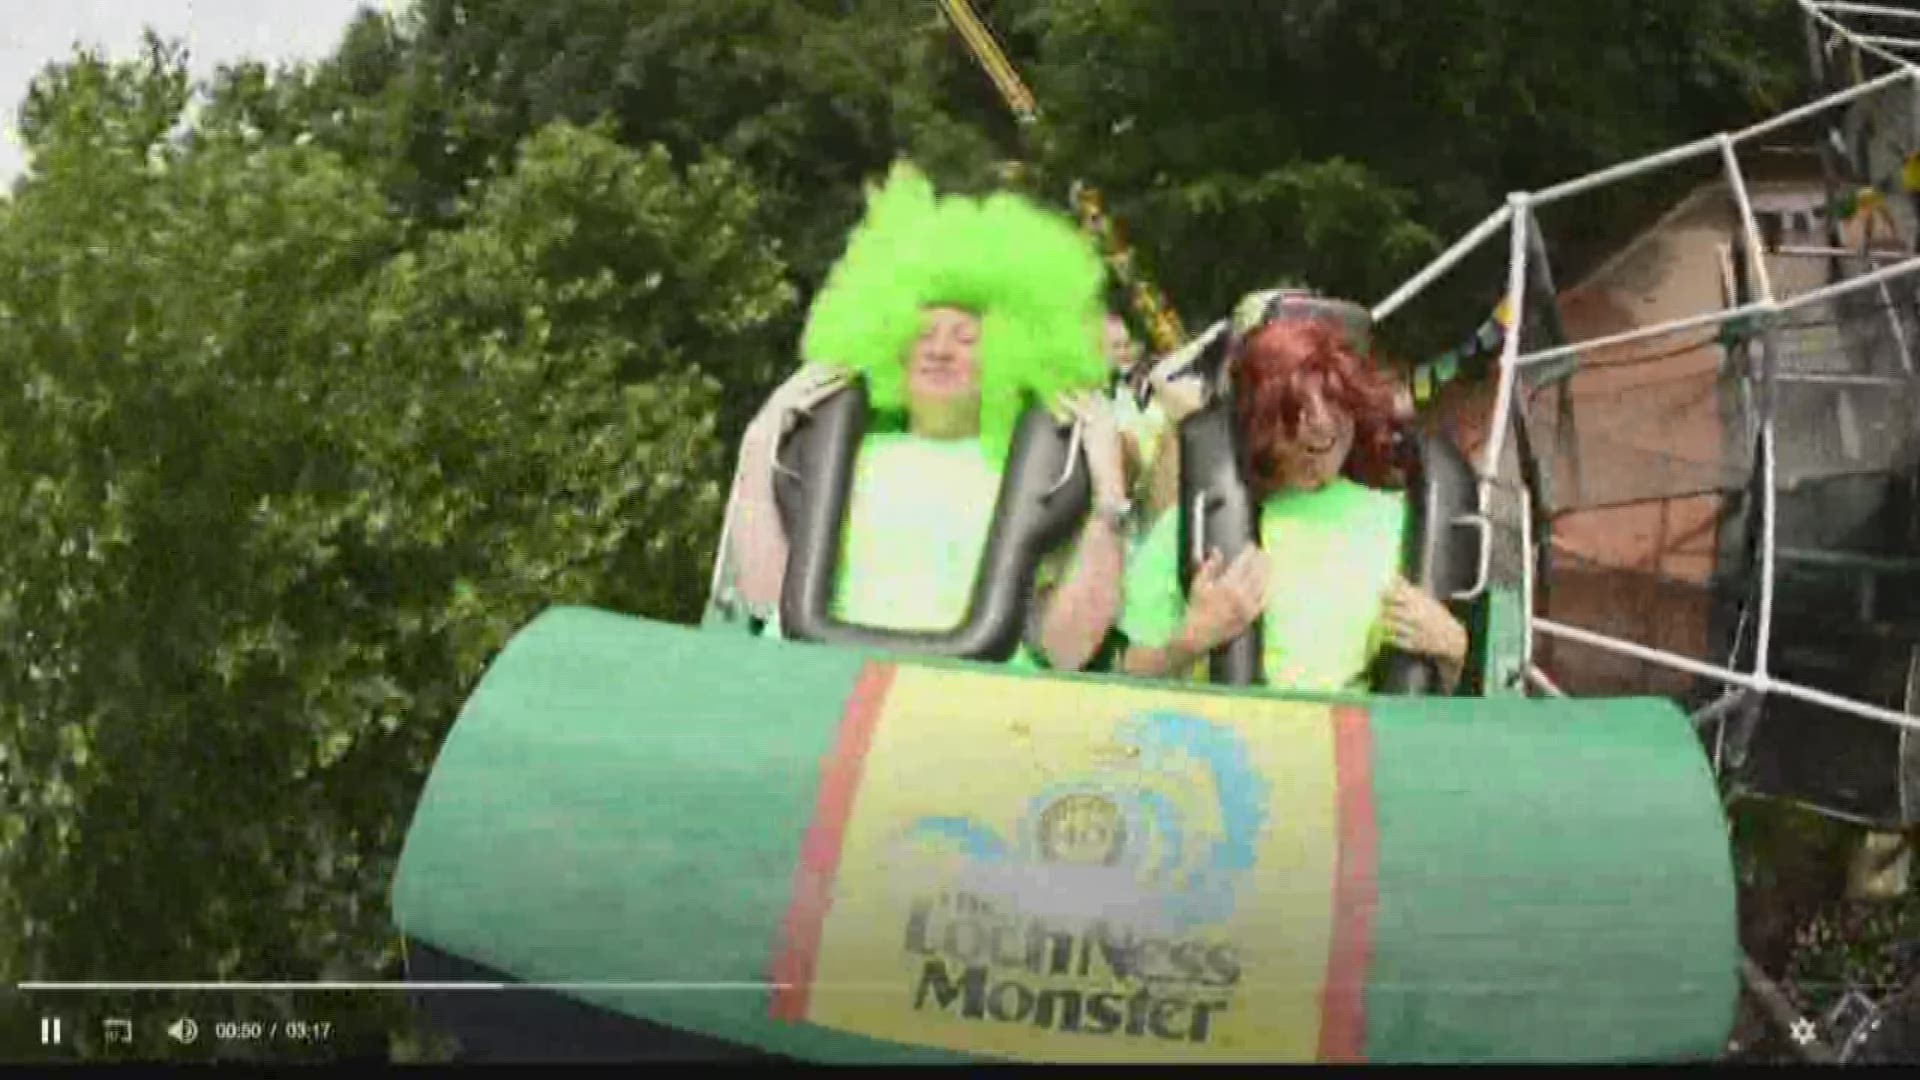 Loch Ness Monster celebrates 40 years at Busch Gardens Williamsburg